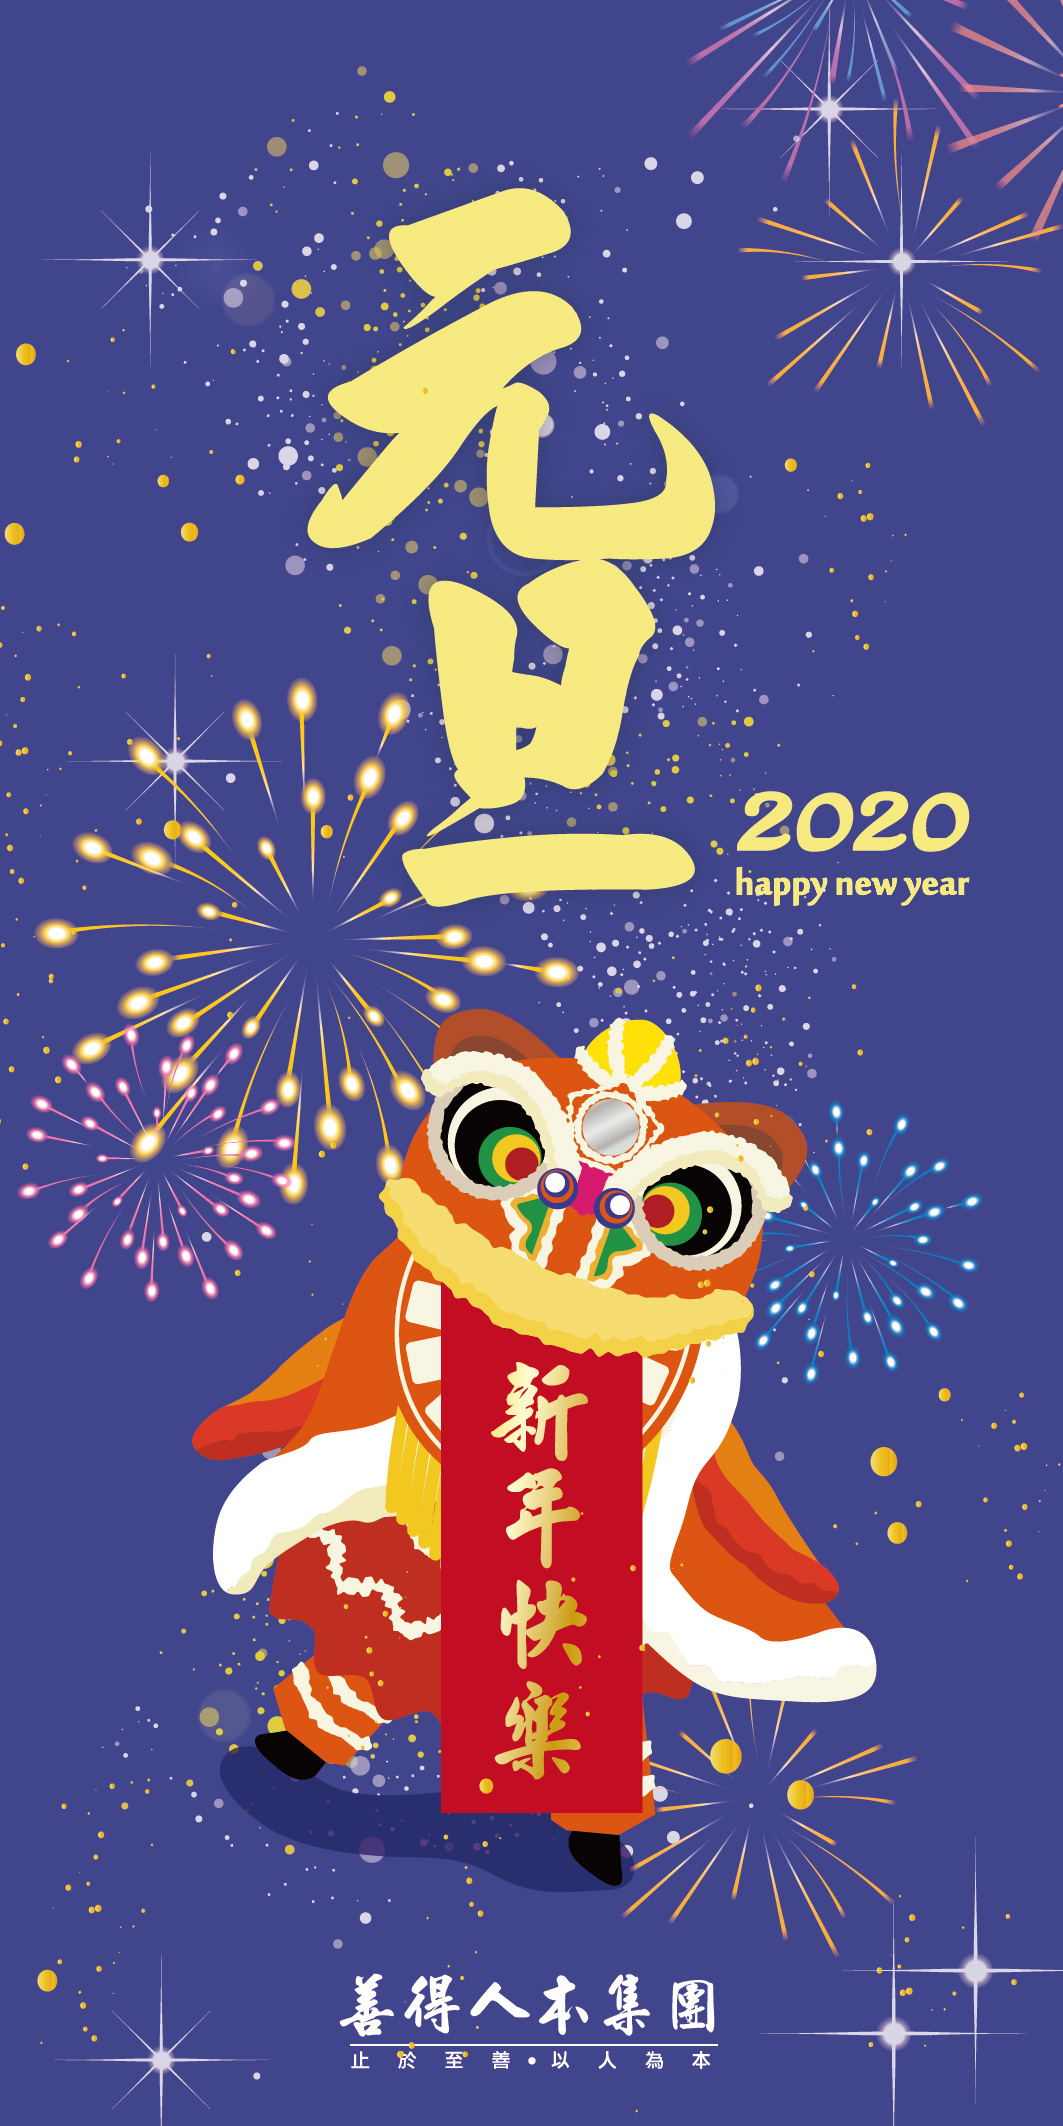 【公告】2020 Happy New Year